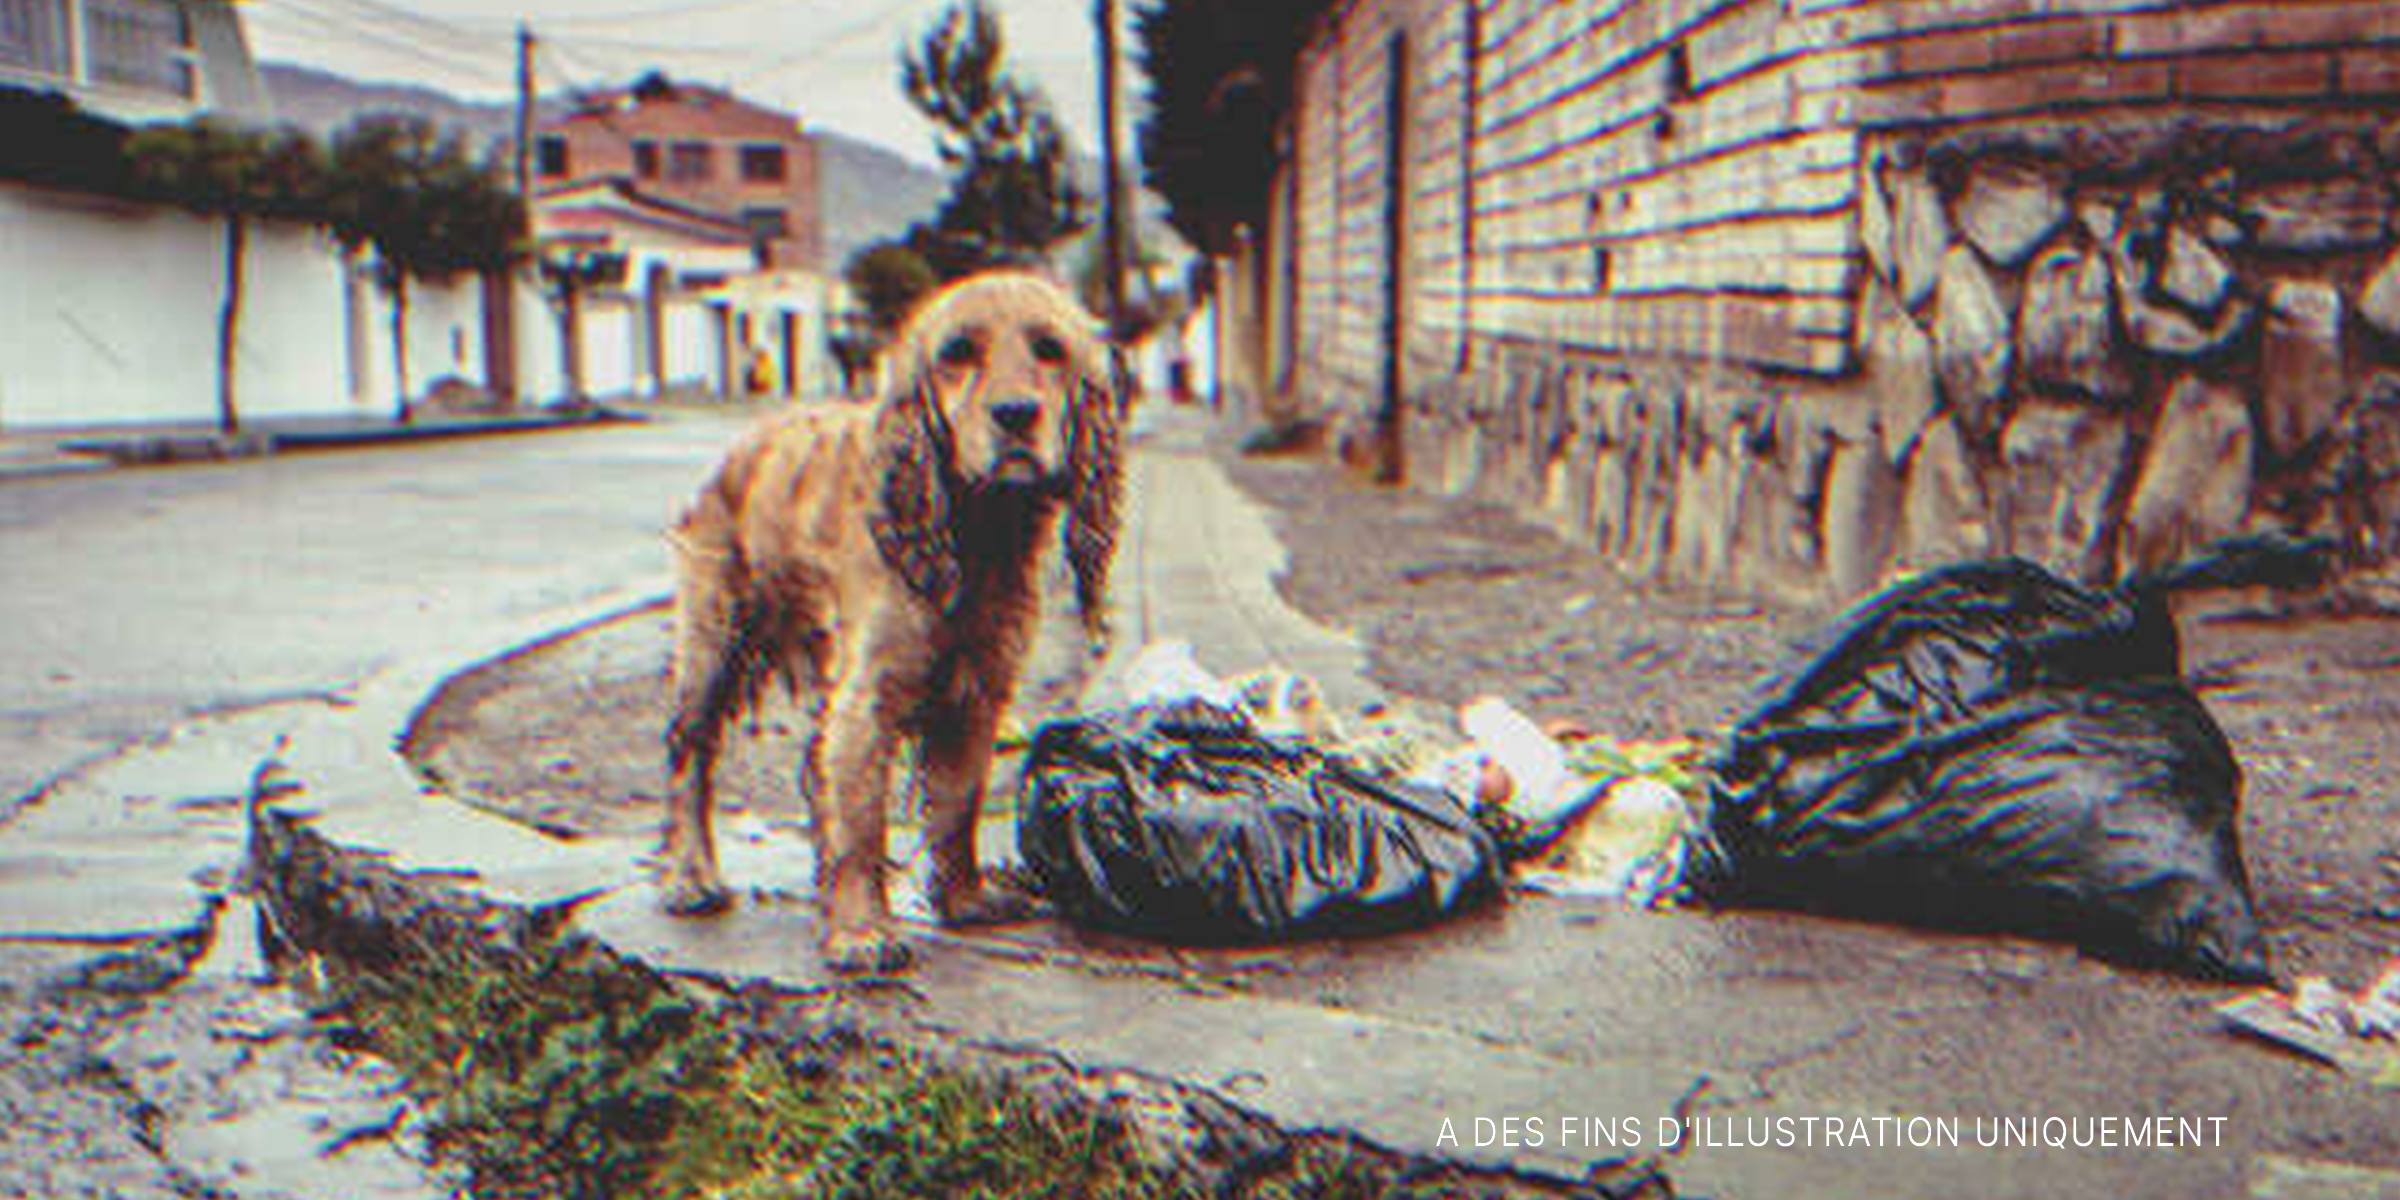 Un chiot errant se trouvant près des ordures | Source : Getty Images